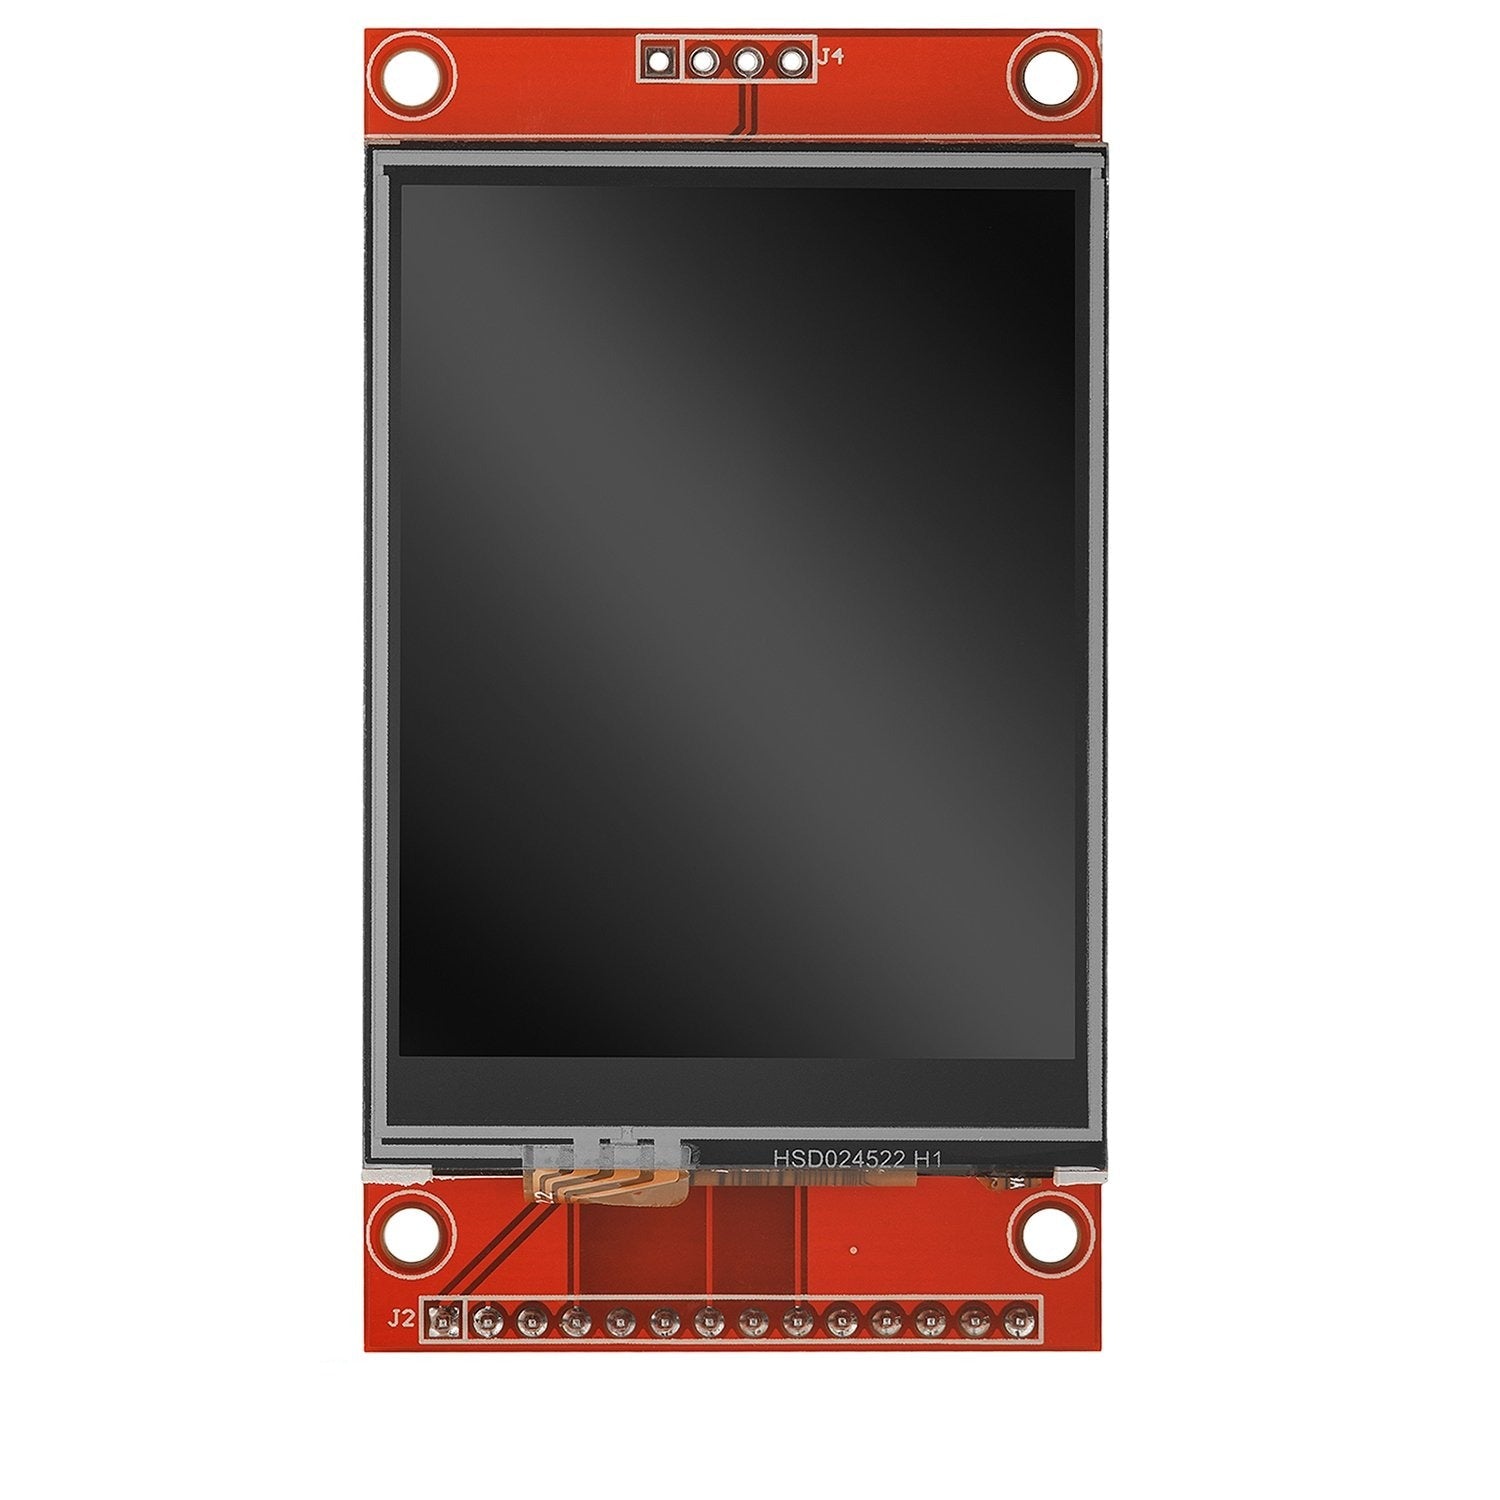 AZ-Touch MOD Wandgehäuseset mit 2,4 Zoll Touchscreen für ESP8266 und ESP32 kompatibel mit Arduino - AZ-Delivery